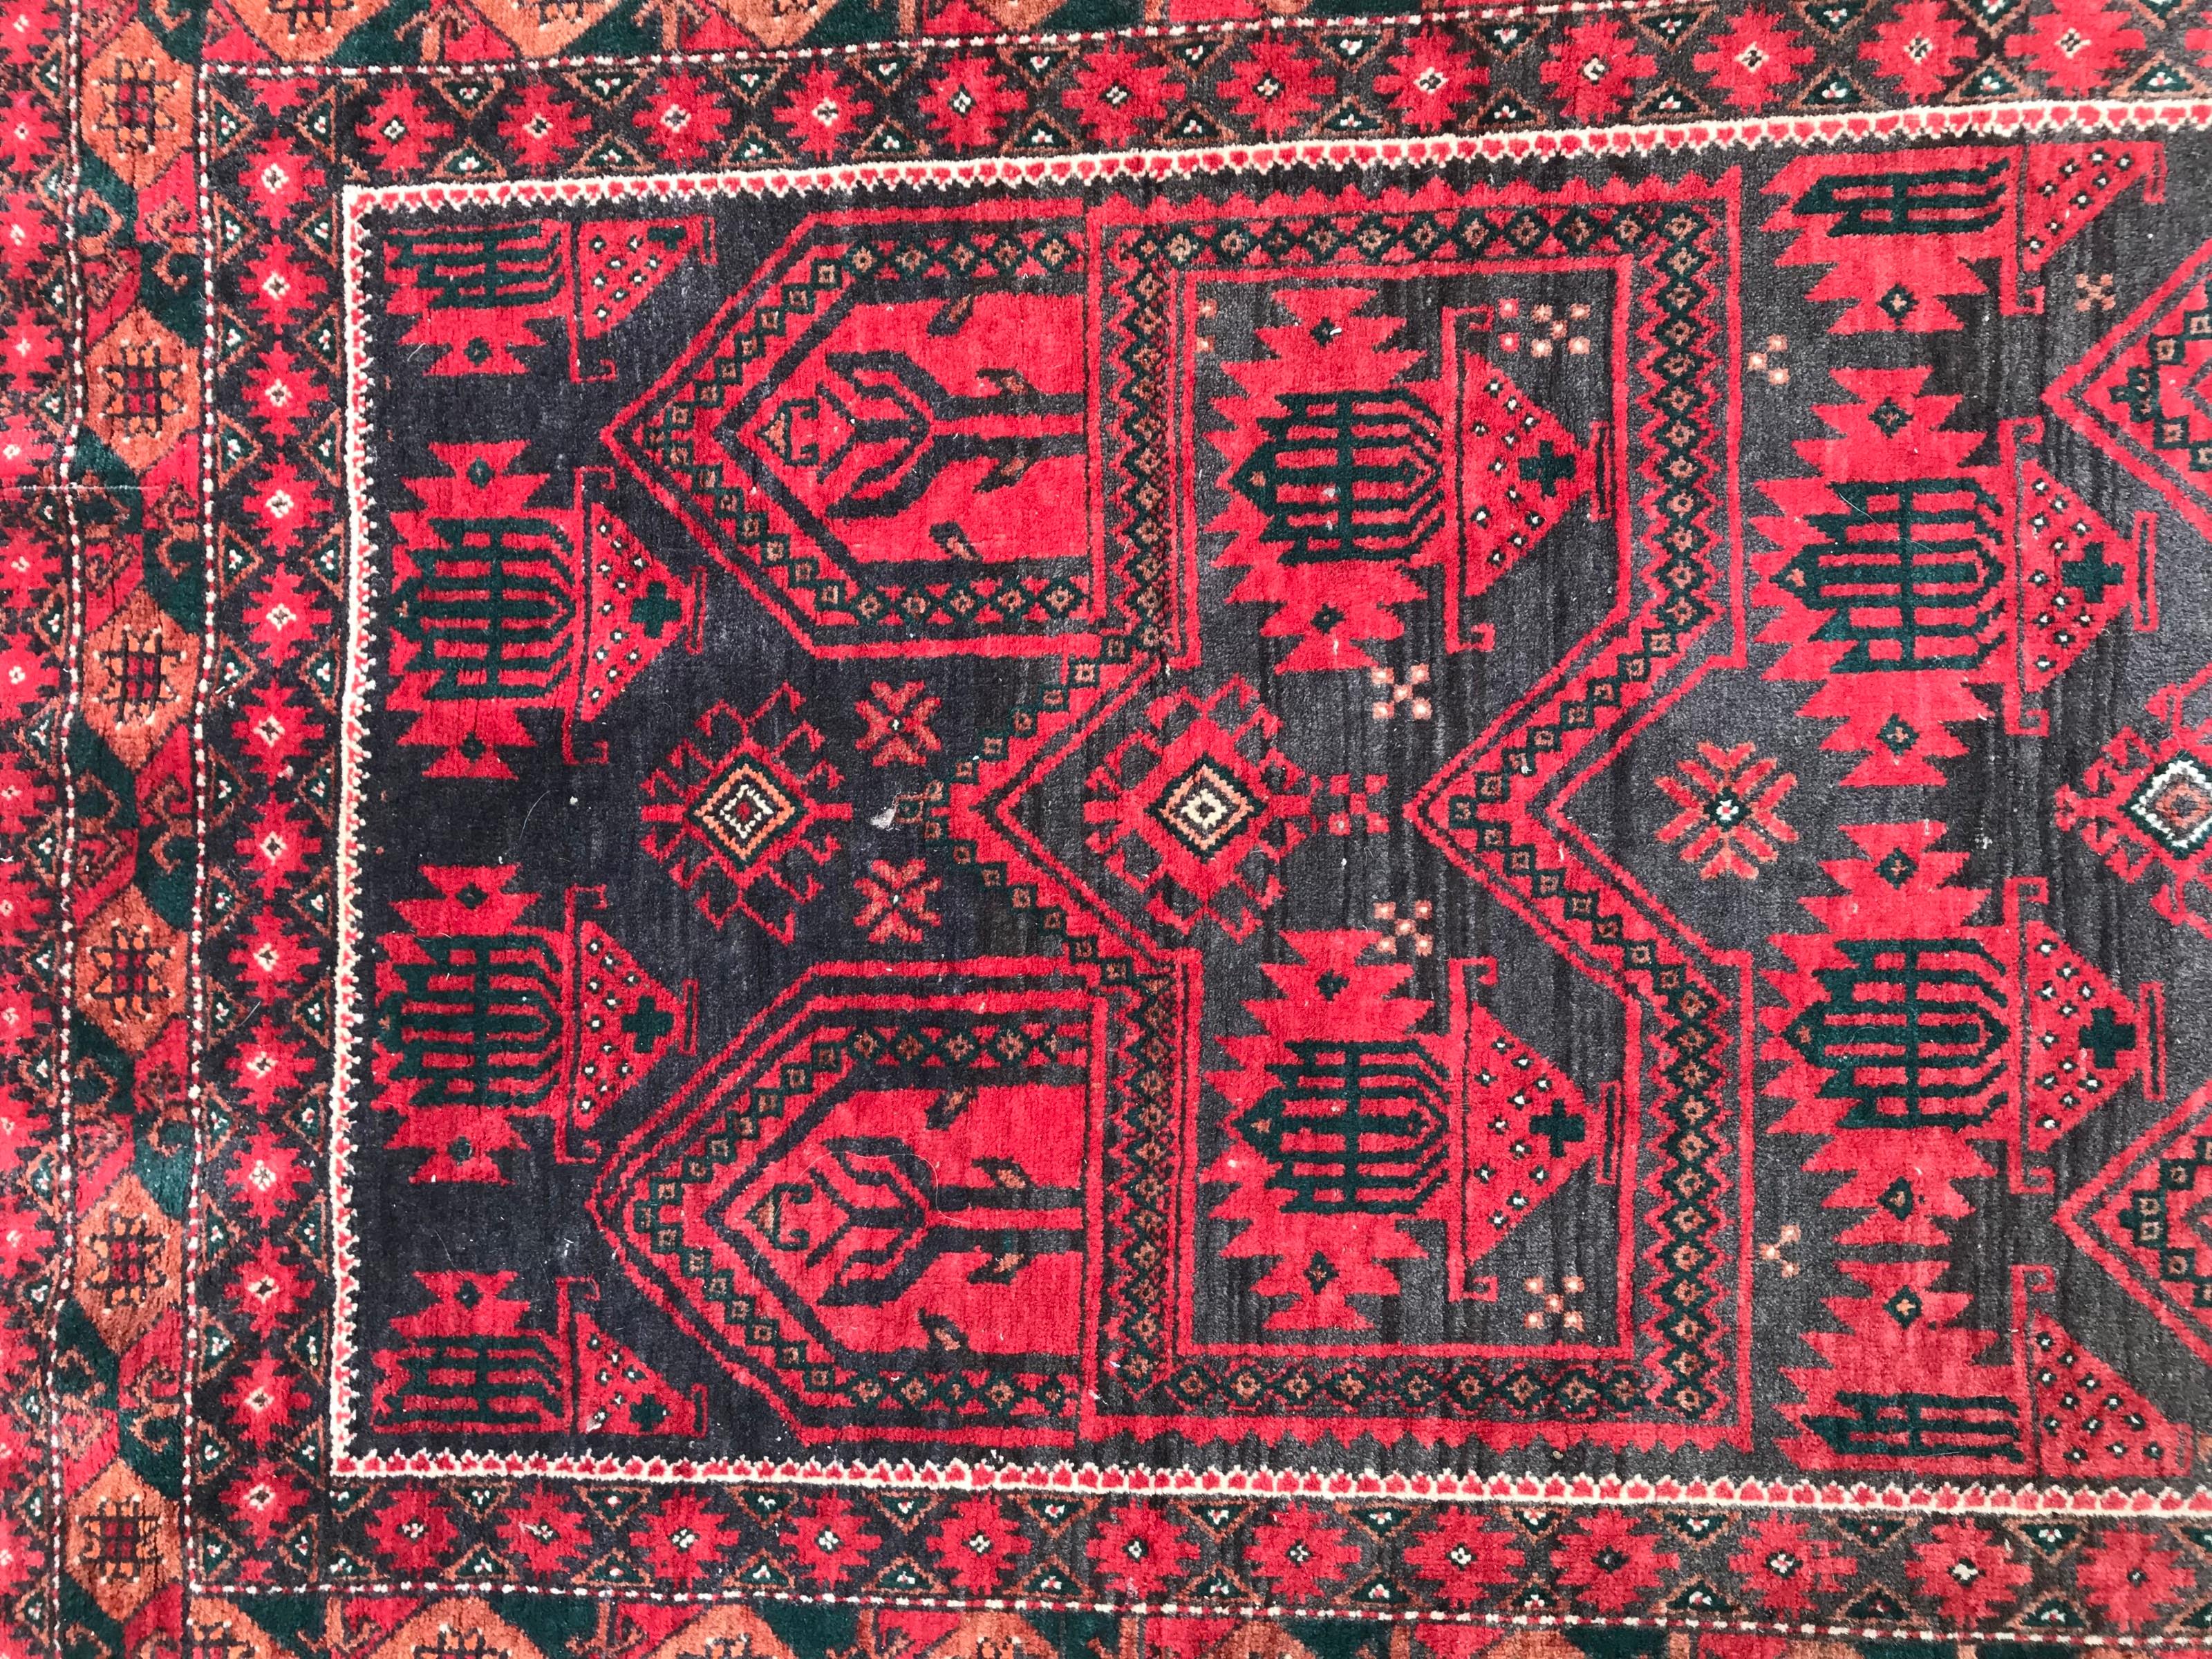 Tapis afghan turkmène Balutch du milieu du 20e siècle, avec un joli design tribal et un champ de couleur rouge, entièrement noué à la main, avec du velours de laine sur des fondations en coton.

✨✨✨
